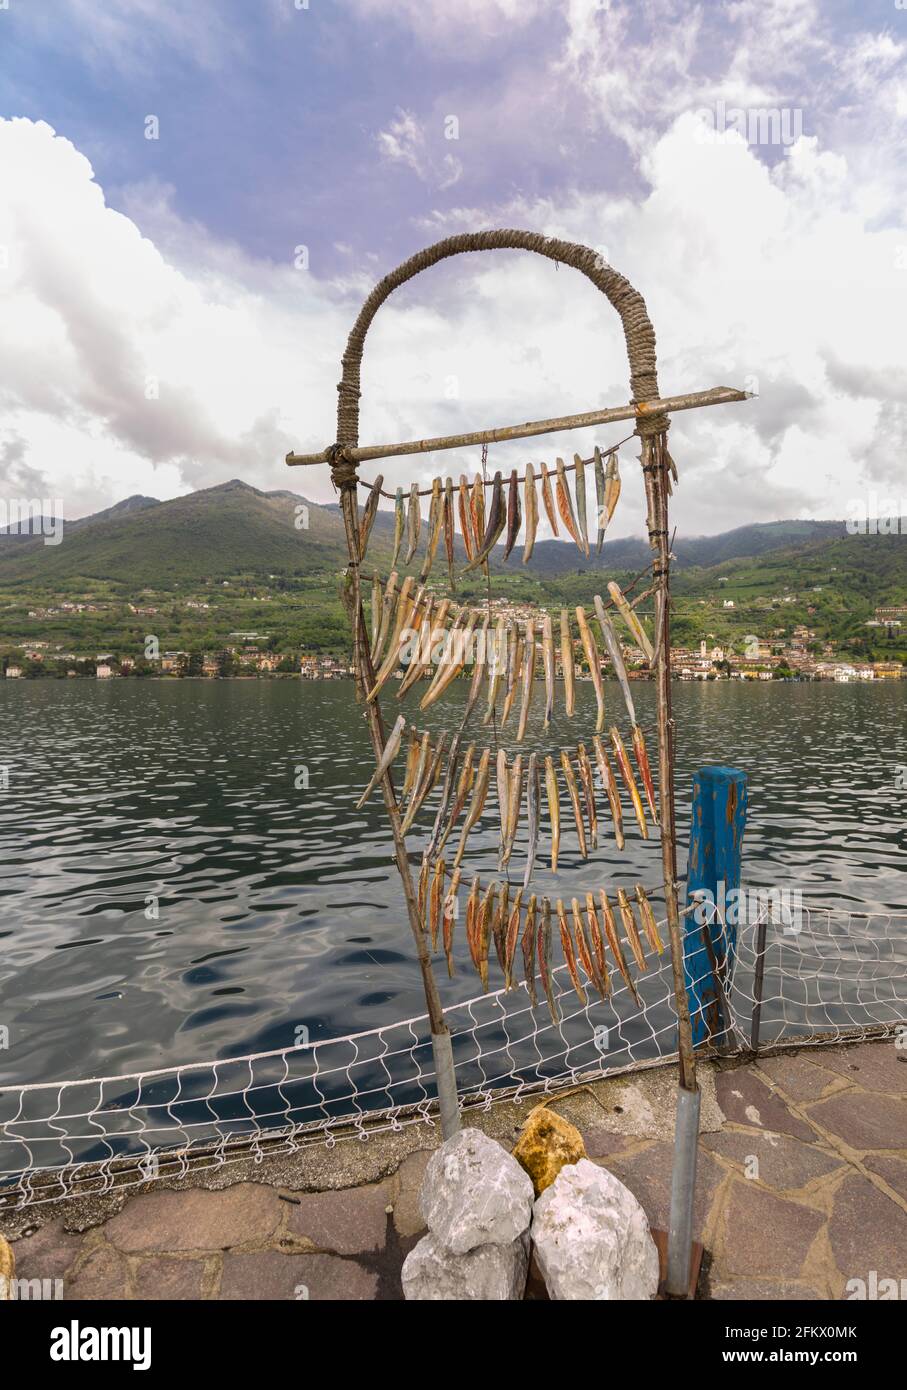 Monte Isola, Italia - 30 aprile 2021: Pesce finto che imita pesci che pendono a secco, cibo tipico del Monte Isola, la più grande isola lacustre d'Europa. Foto Stock